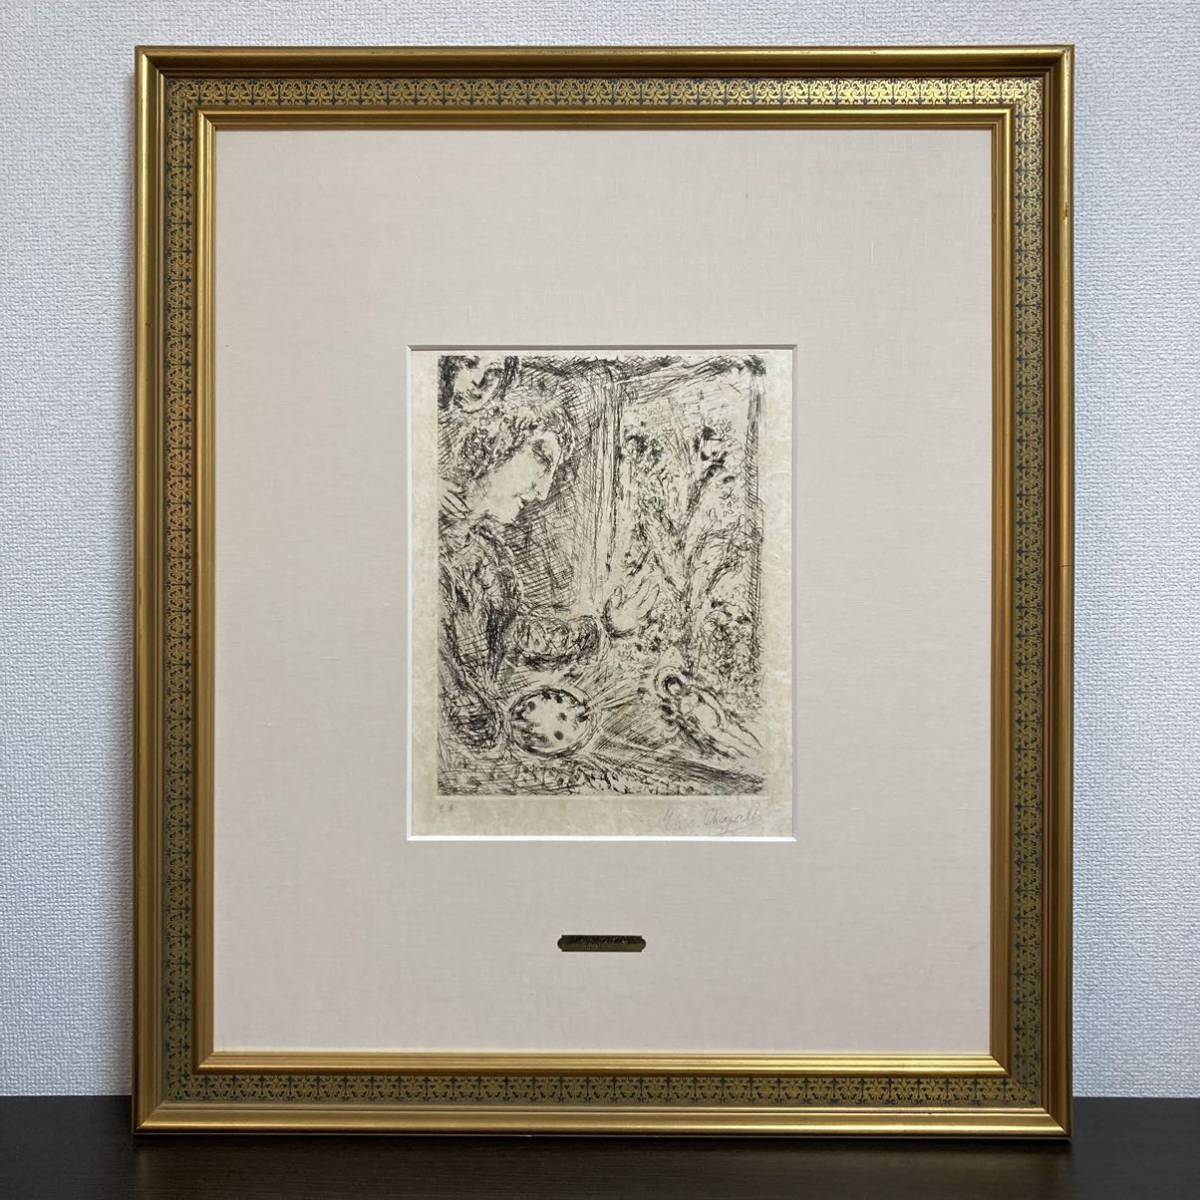 【真作】マルク・シャガール「ノアの生贄」エッチング 直筆サイン 額装 版画 絵画 銅版画